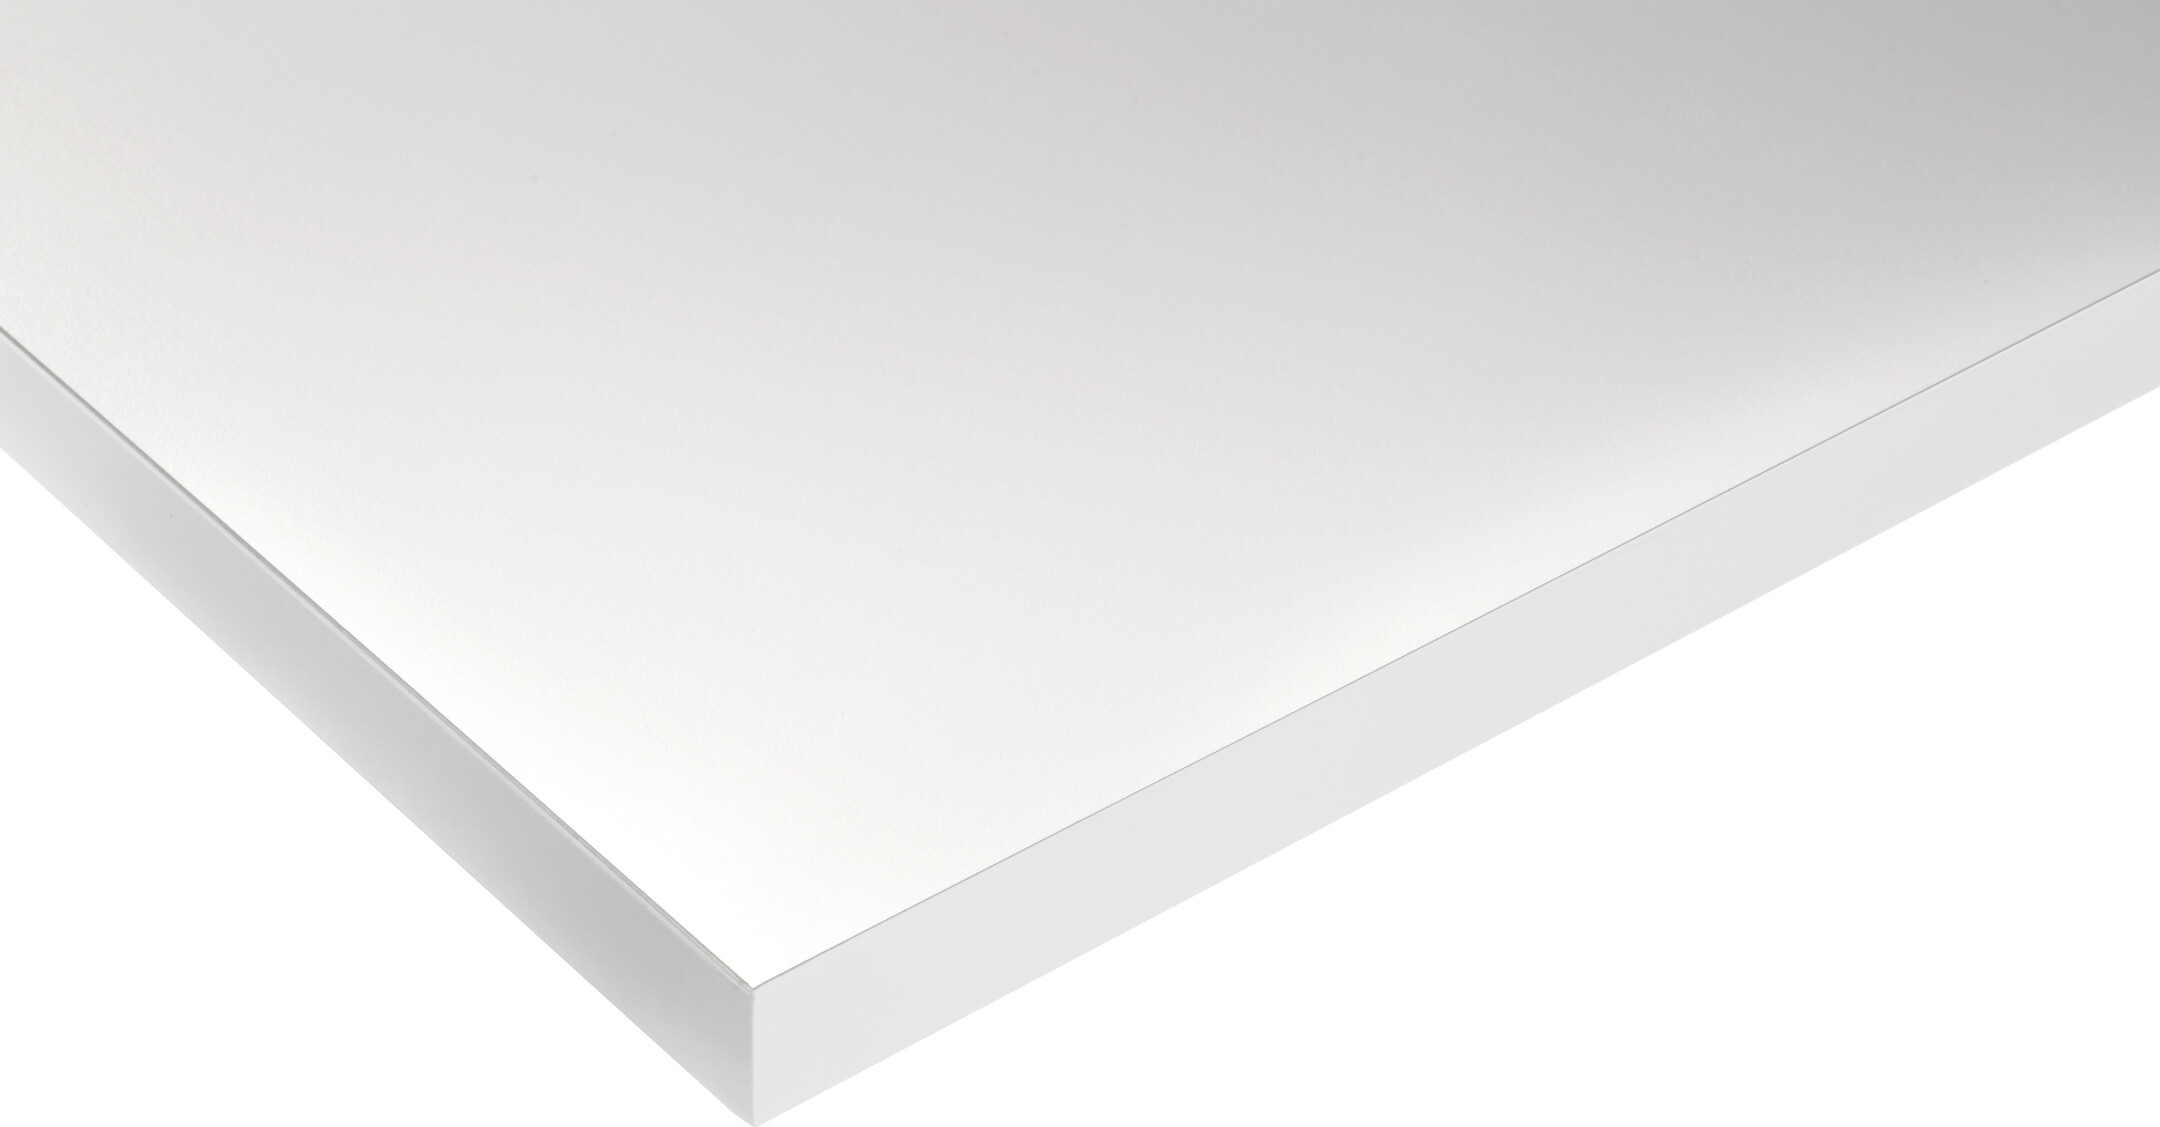 celexon Tischplatte 175 x 75cm für Adjust- Schreibtisch, weiß